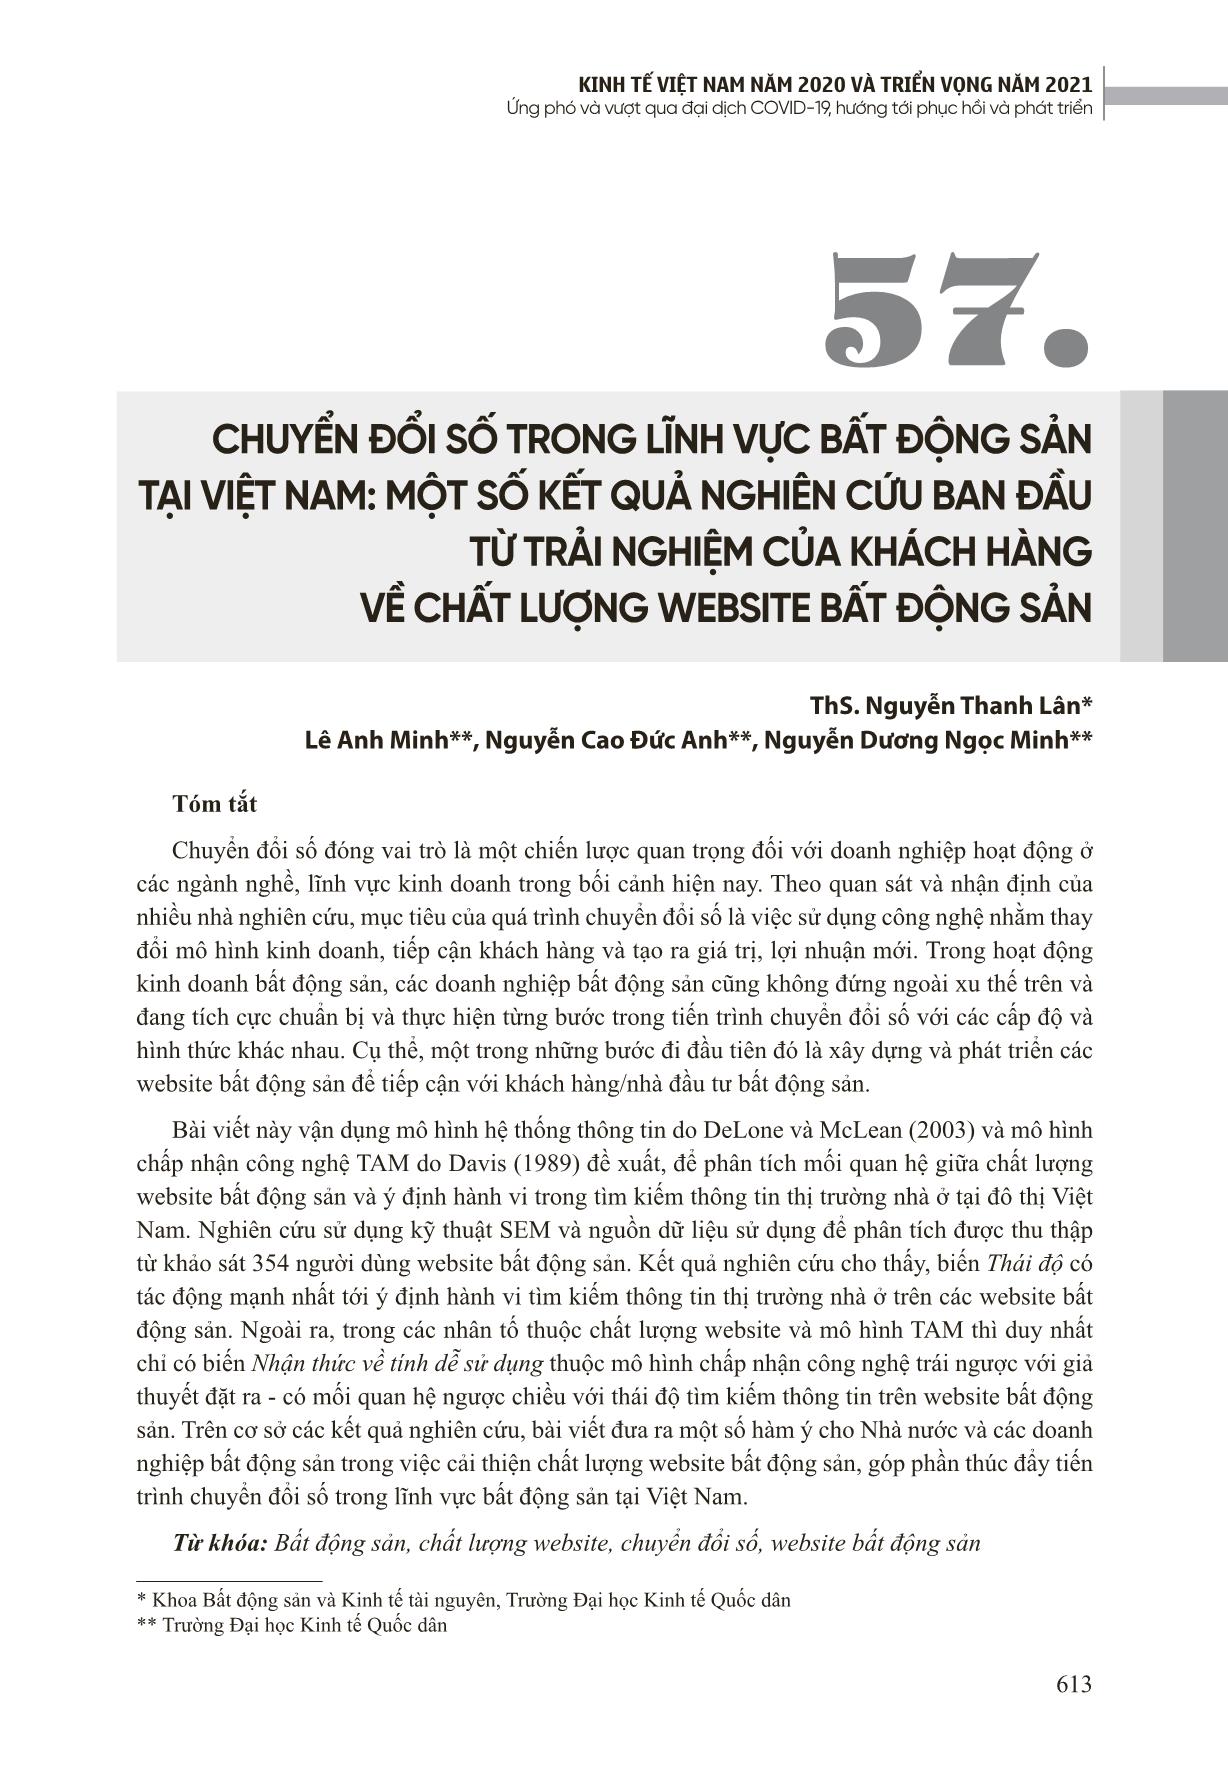 Chuyển đổi số trong lĩnh vực bất động sản tại Việt Nam: Một số kết quả nghiên cứu ban đầu từ trải nghiệm của khách hàng về chất lượng website bất động sản trang 1